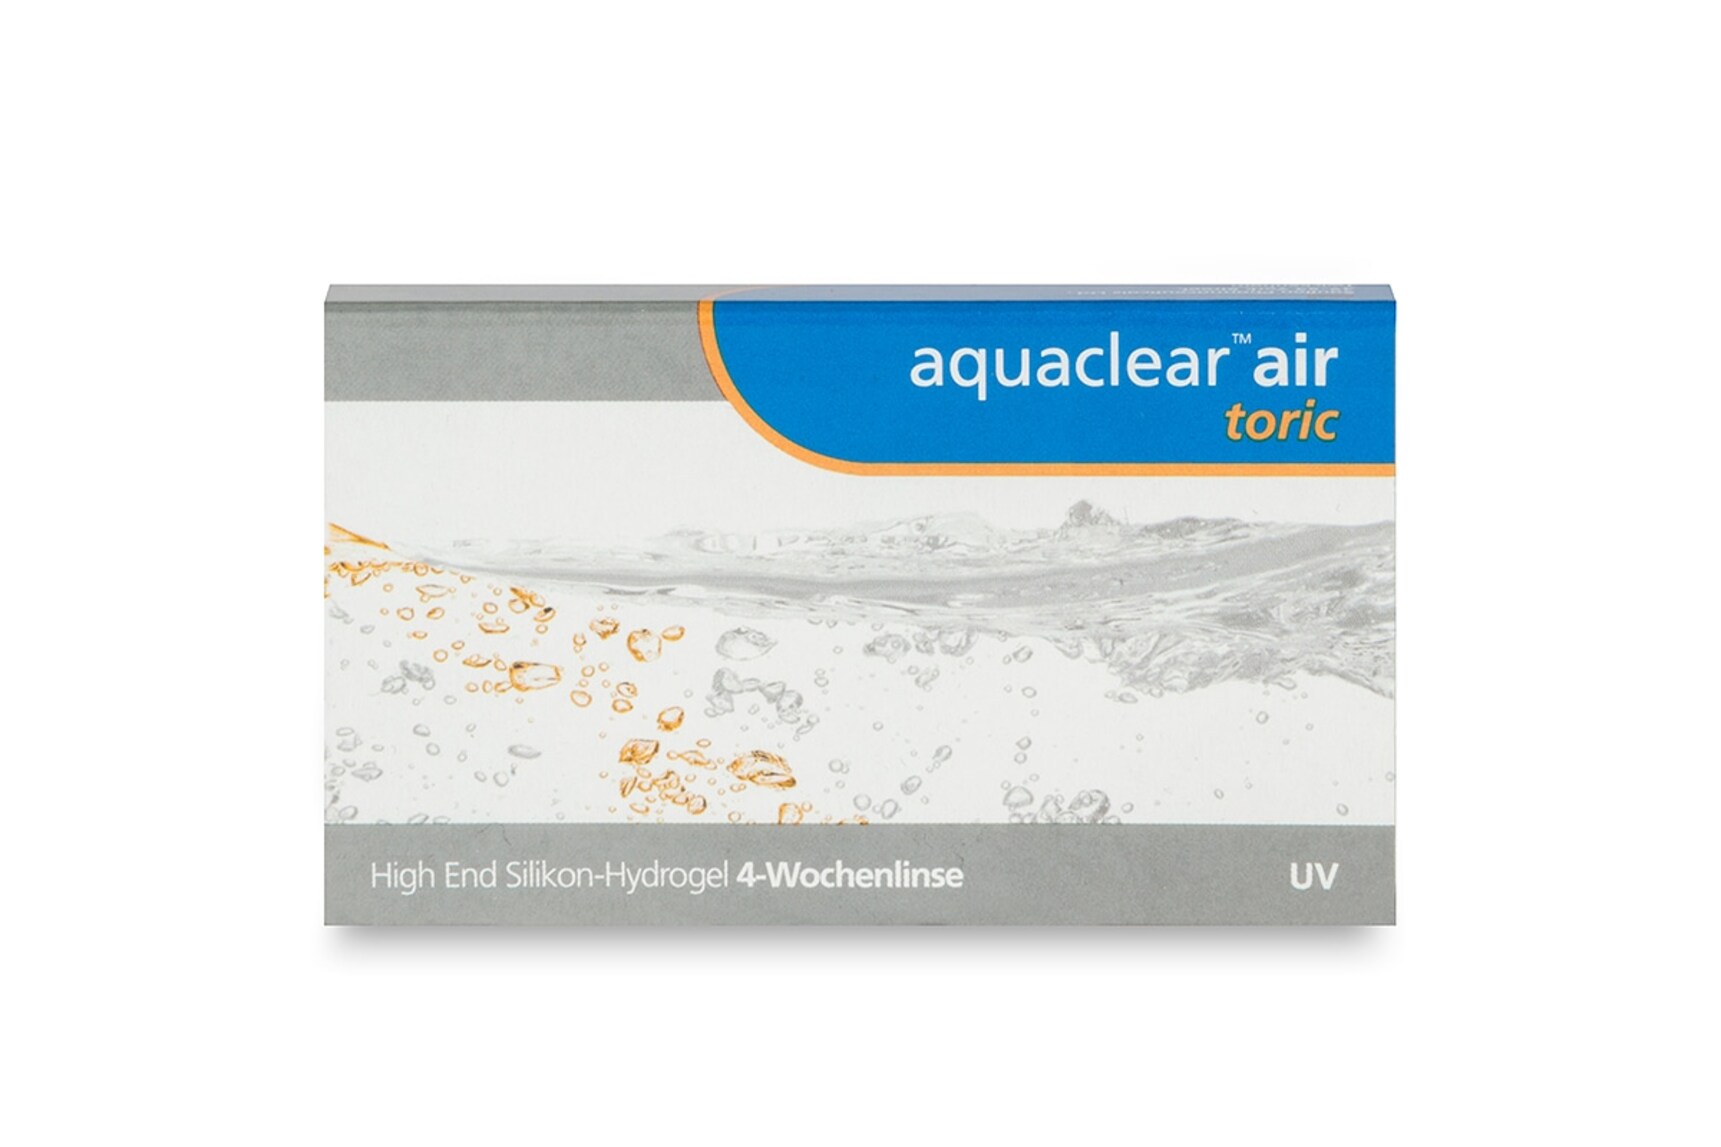 Aquaclear air toric